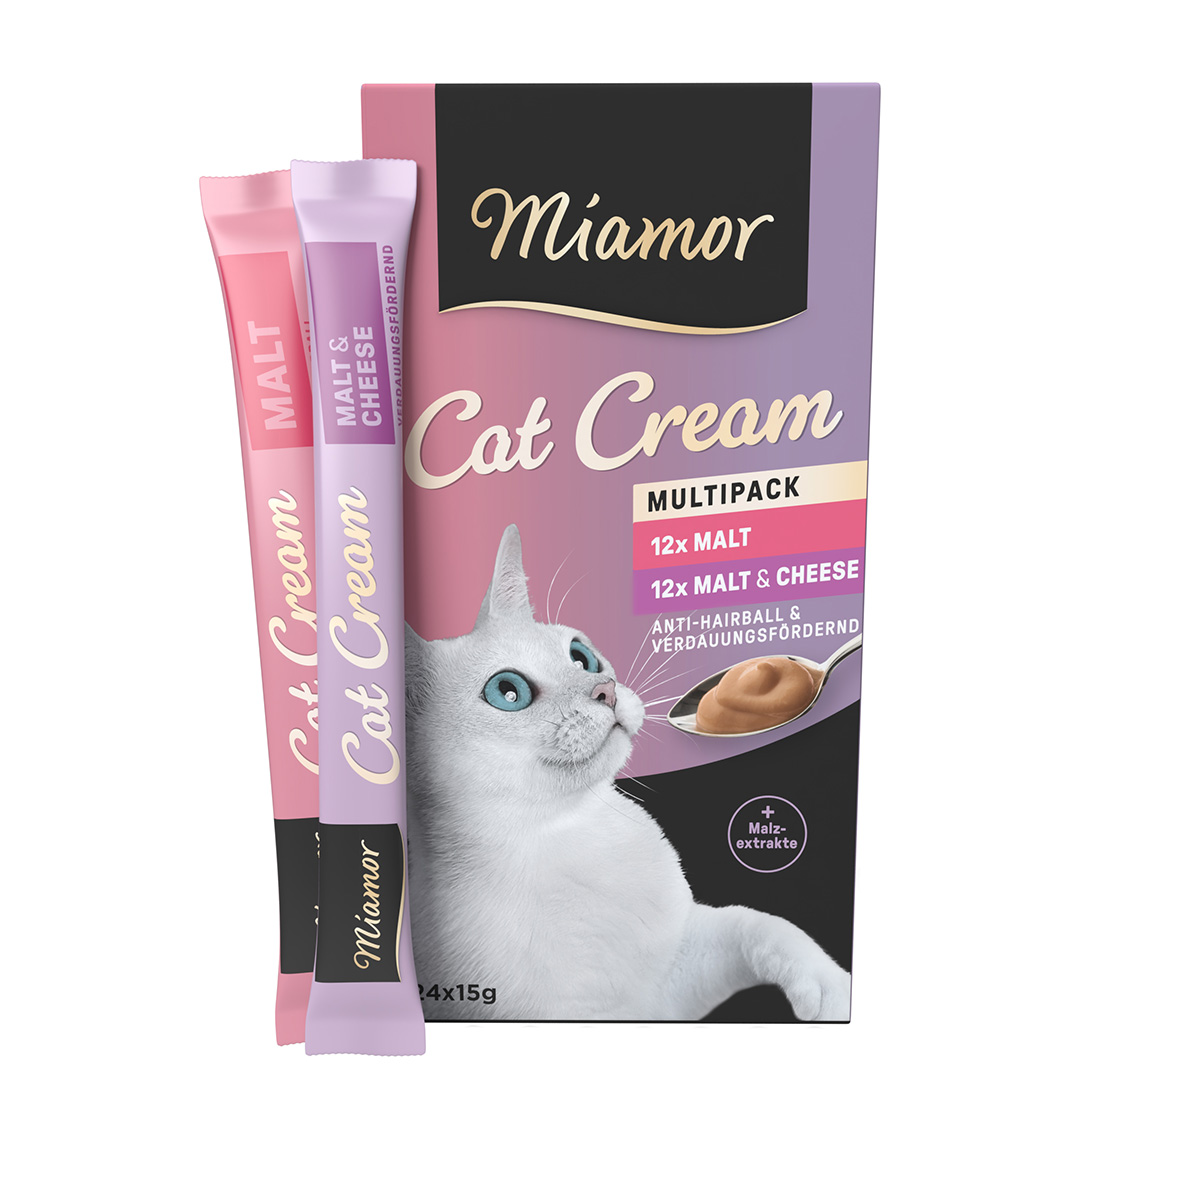 Miamor Cat Cream Multipack 24x15g